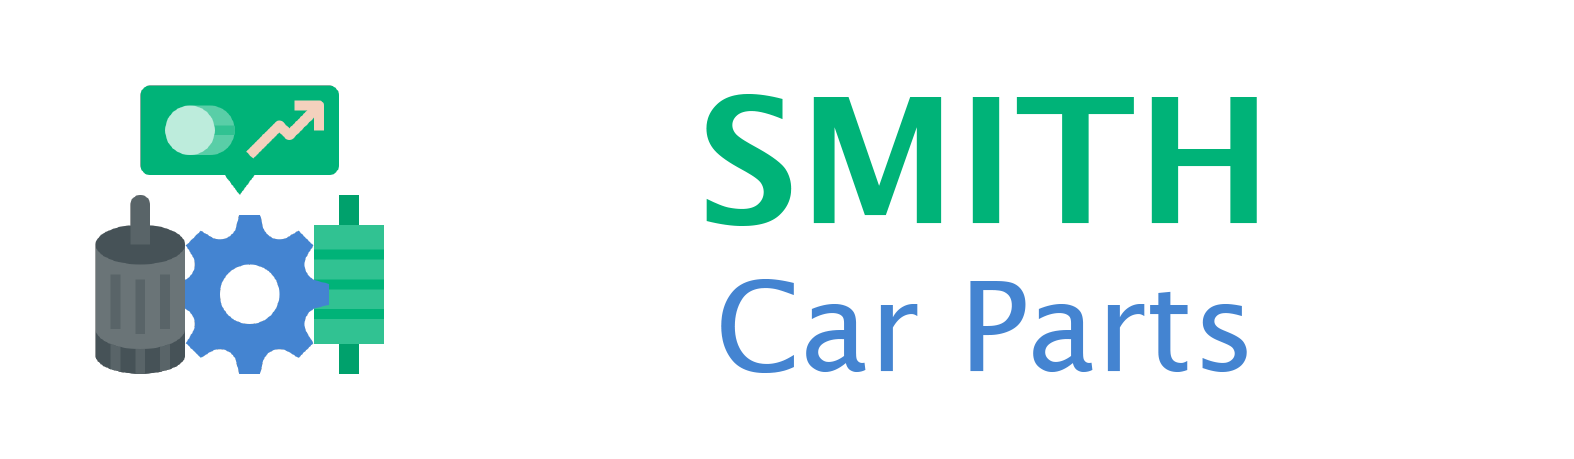 Smith Car Parts